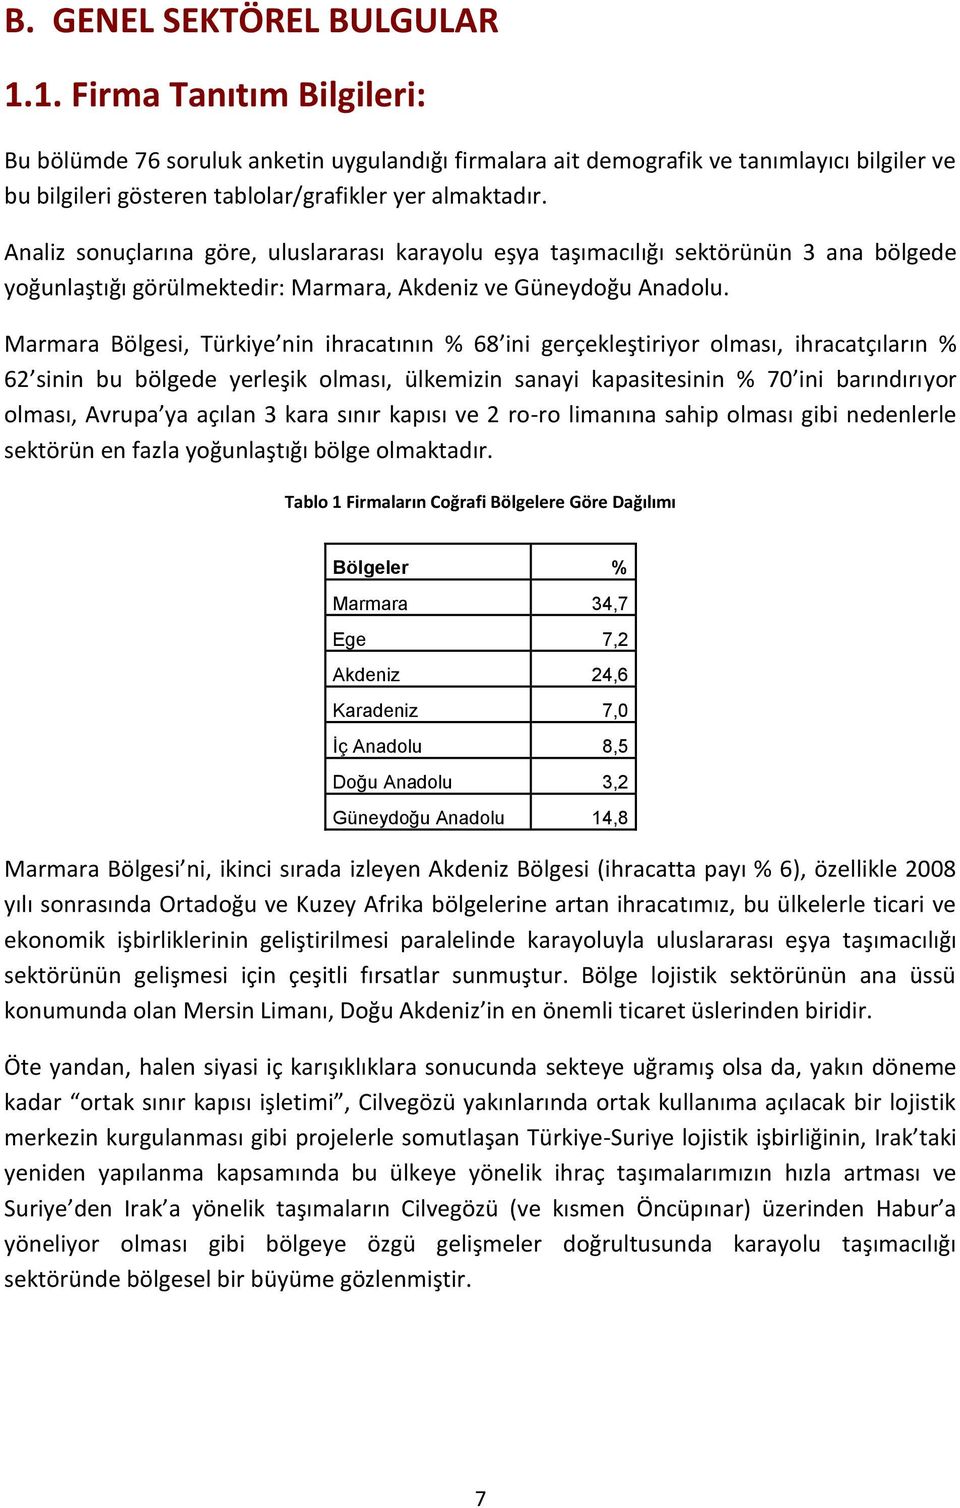 Analiz sonuçlarına göre, uluslararası karayolu eşya taşımacılığı sektörünün 3 ana bölgede yoğunlaştığı görülmektedir: Marmara, Akdeniz ve Güneydoğu Anadolu.